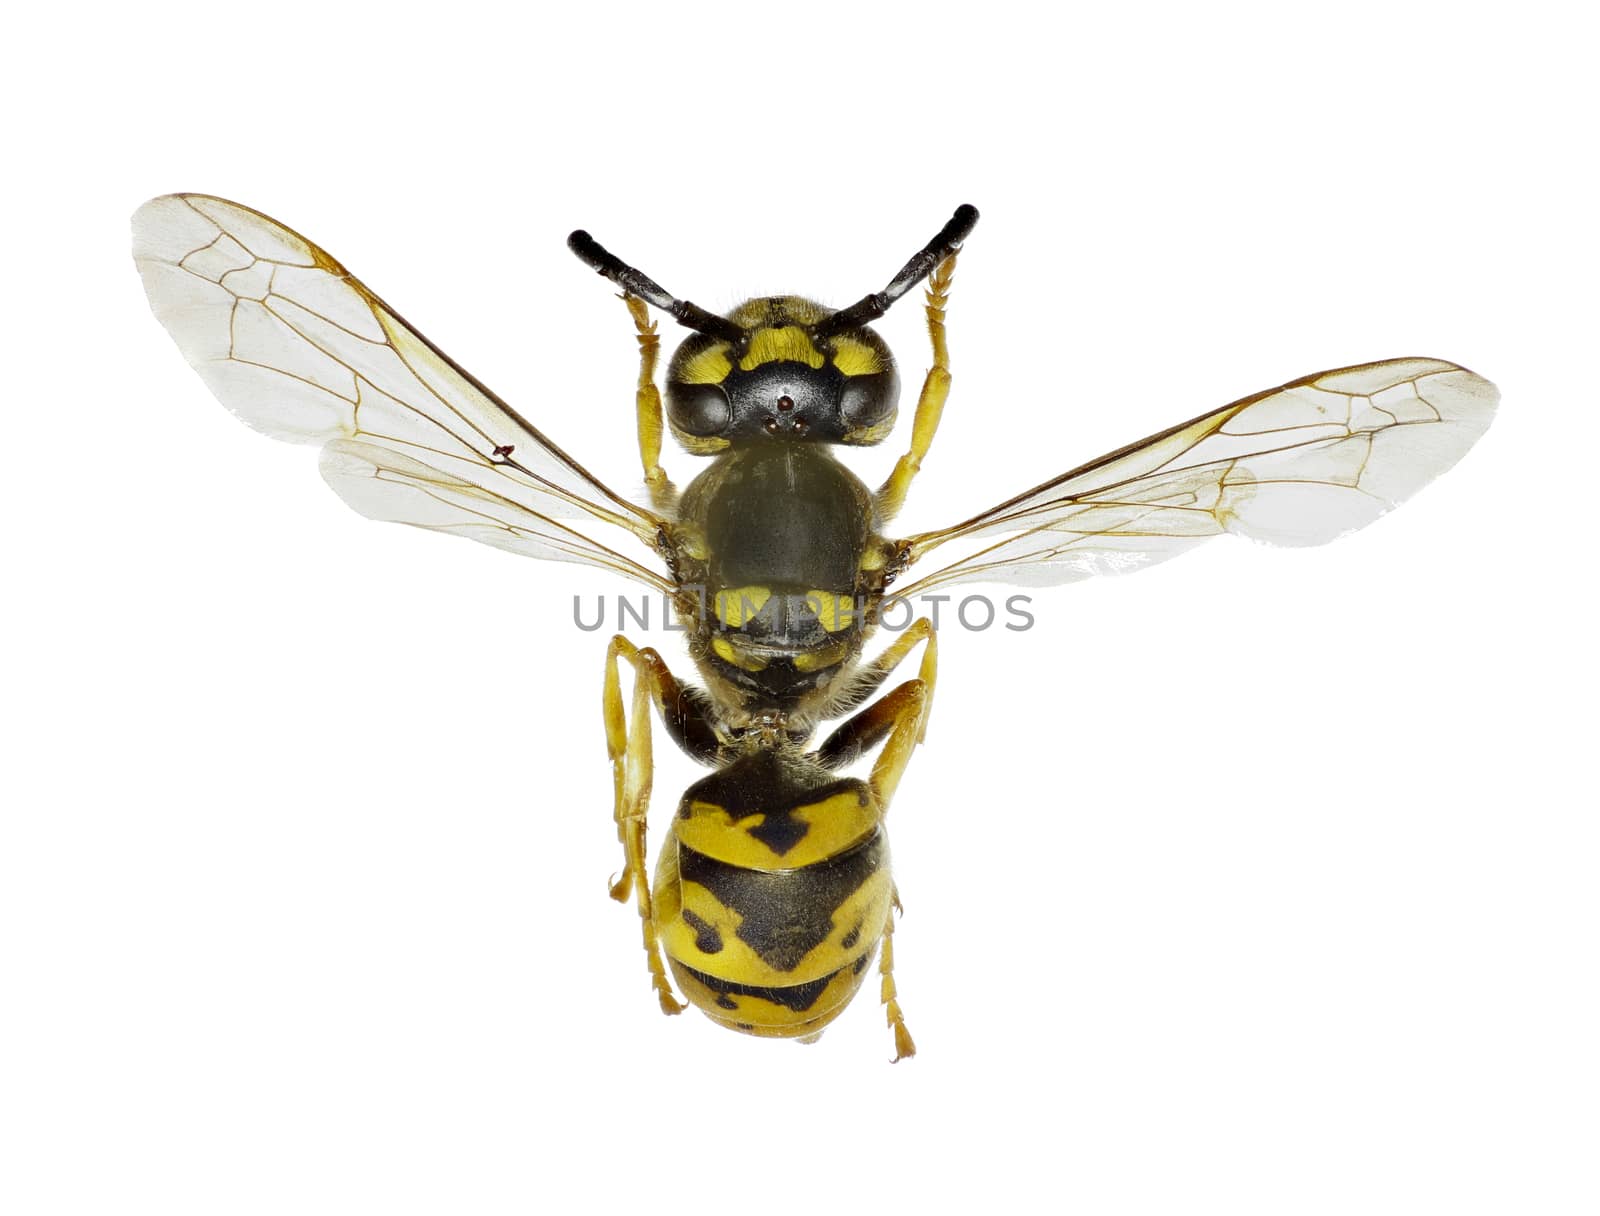 German Wasp on white Background  -  Vespula germanica (Fabricius, 1793 by gstalker